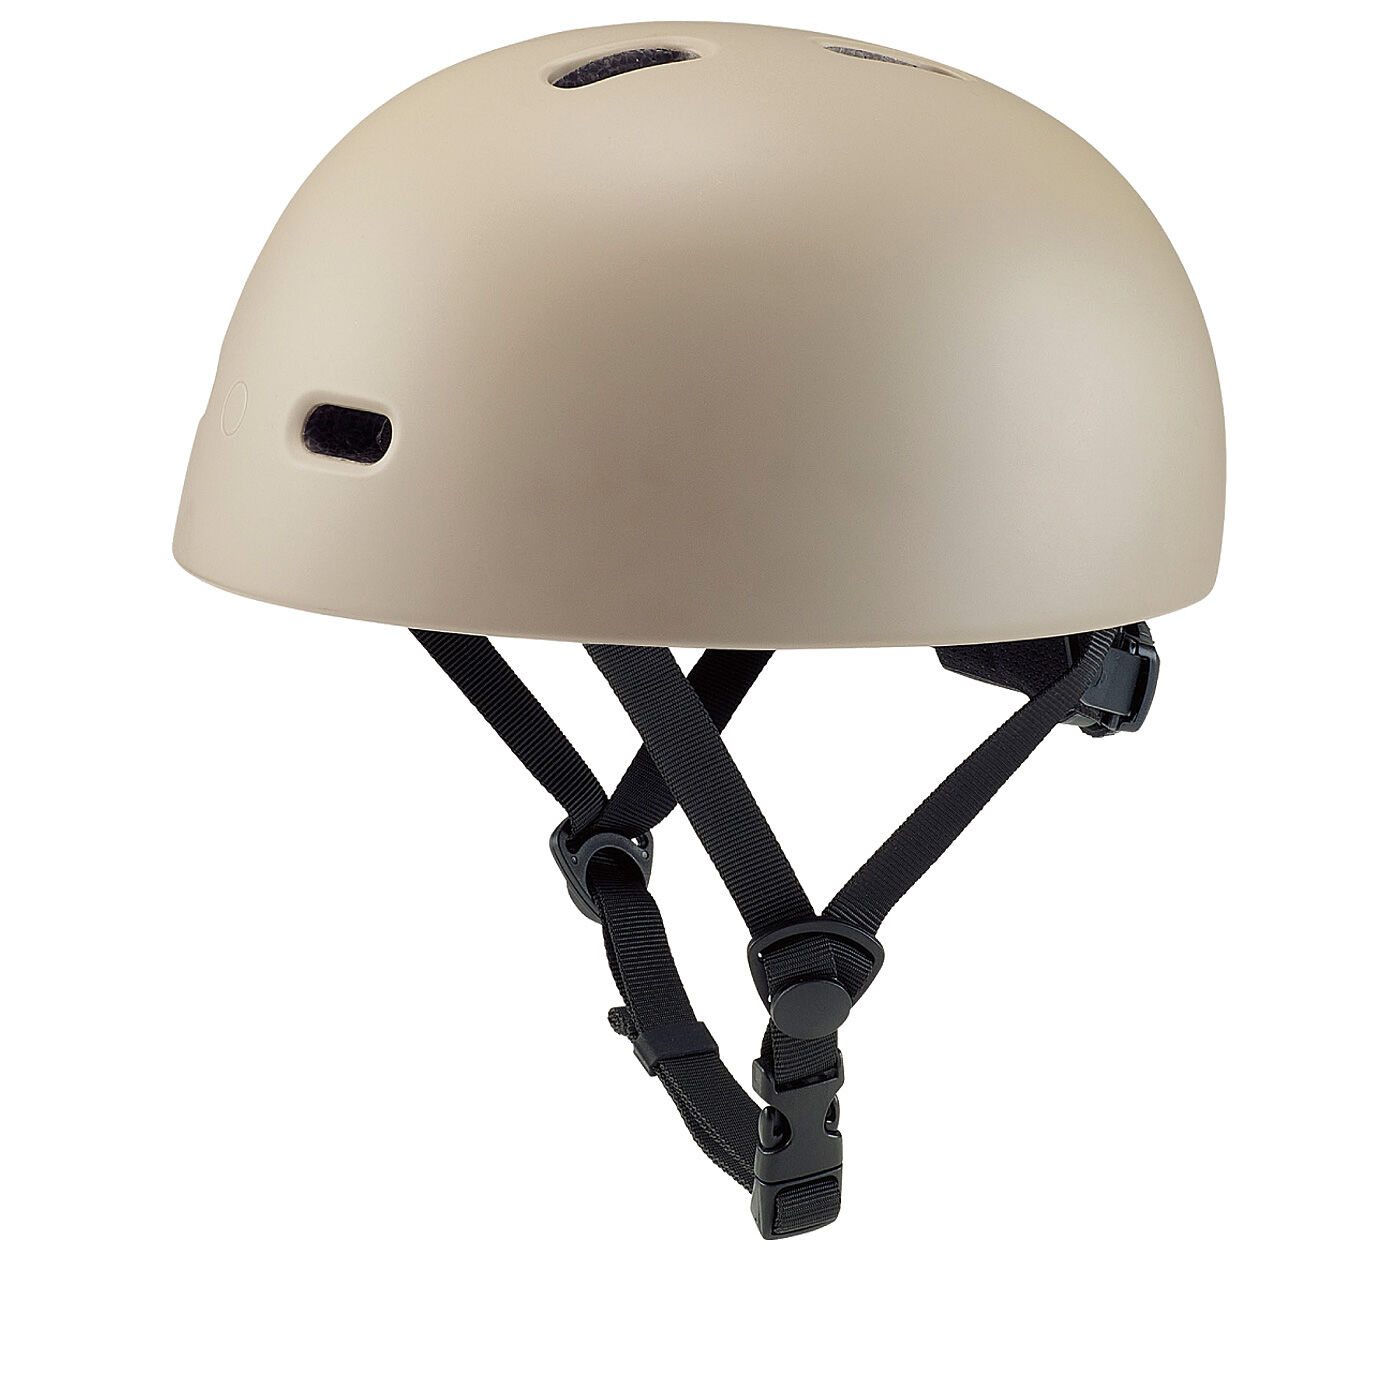 L'AMIPLUS|ラミプリュス　いつものコーデになじんで安全プラス　SG基準のクロシェタイプおしゃヘル〈ベージュ〉|ヘルメット単体でも使用OK！